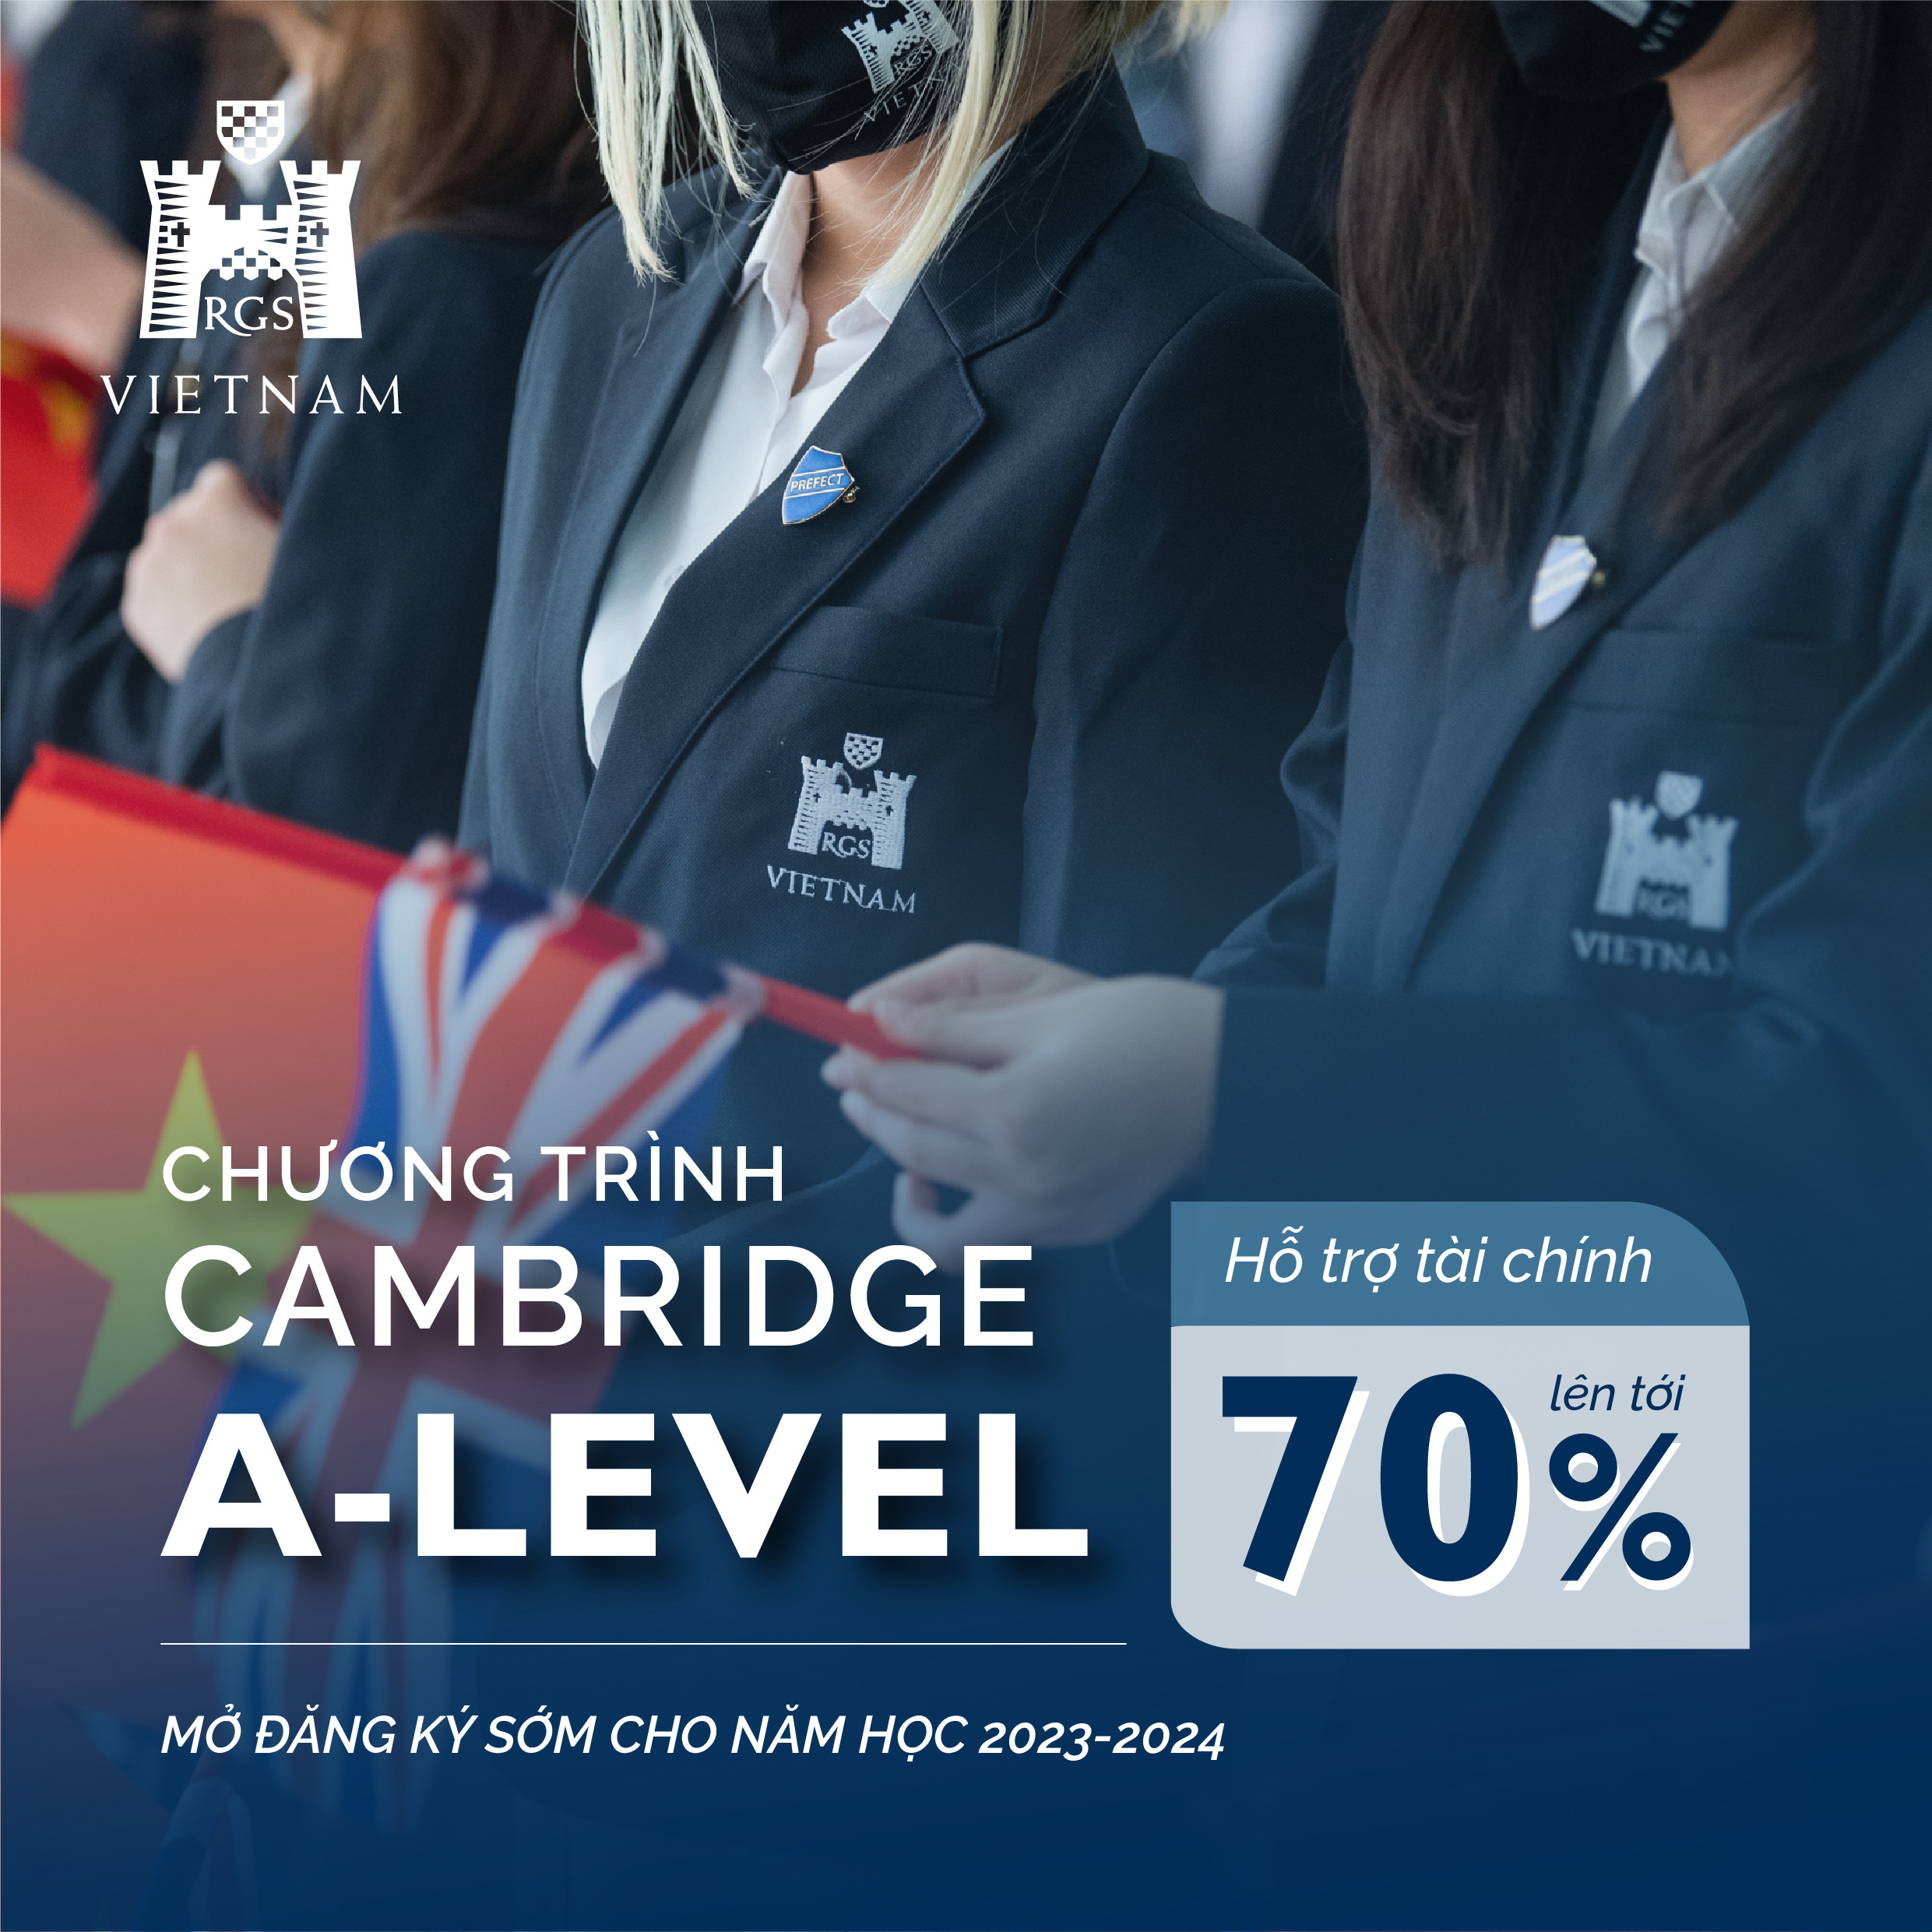 Cơ hội nhận Hỗ trợ tài chính lên tới 70% cho hệ Cambridge A Level tại RGS Vietnam